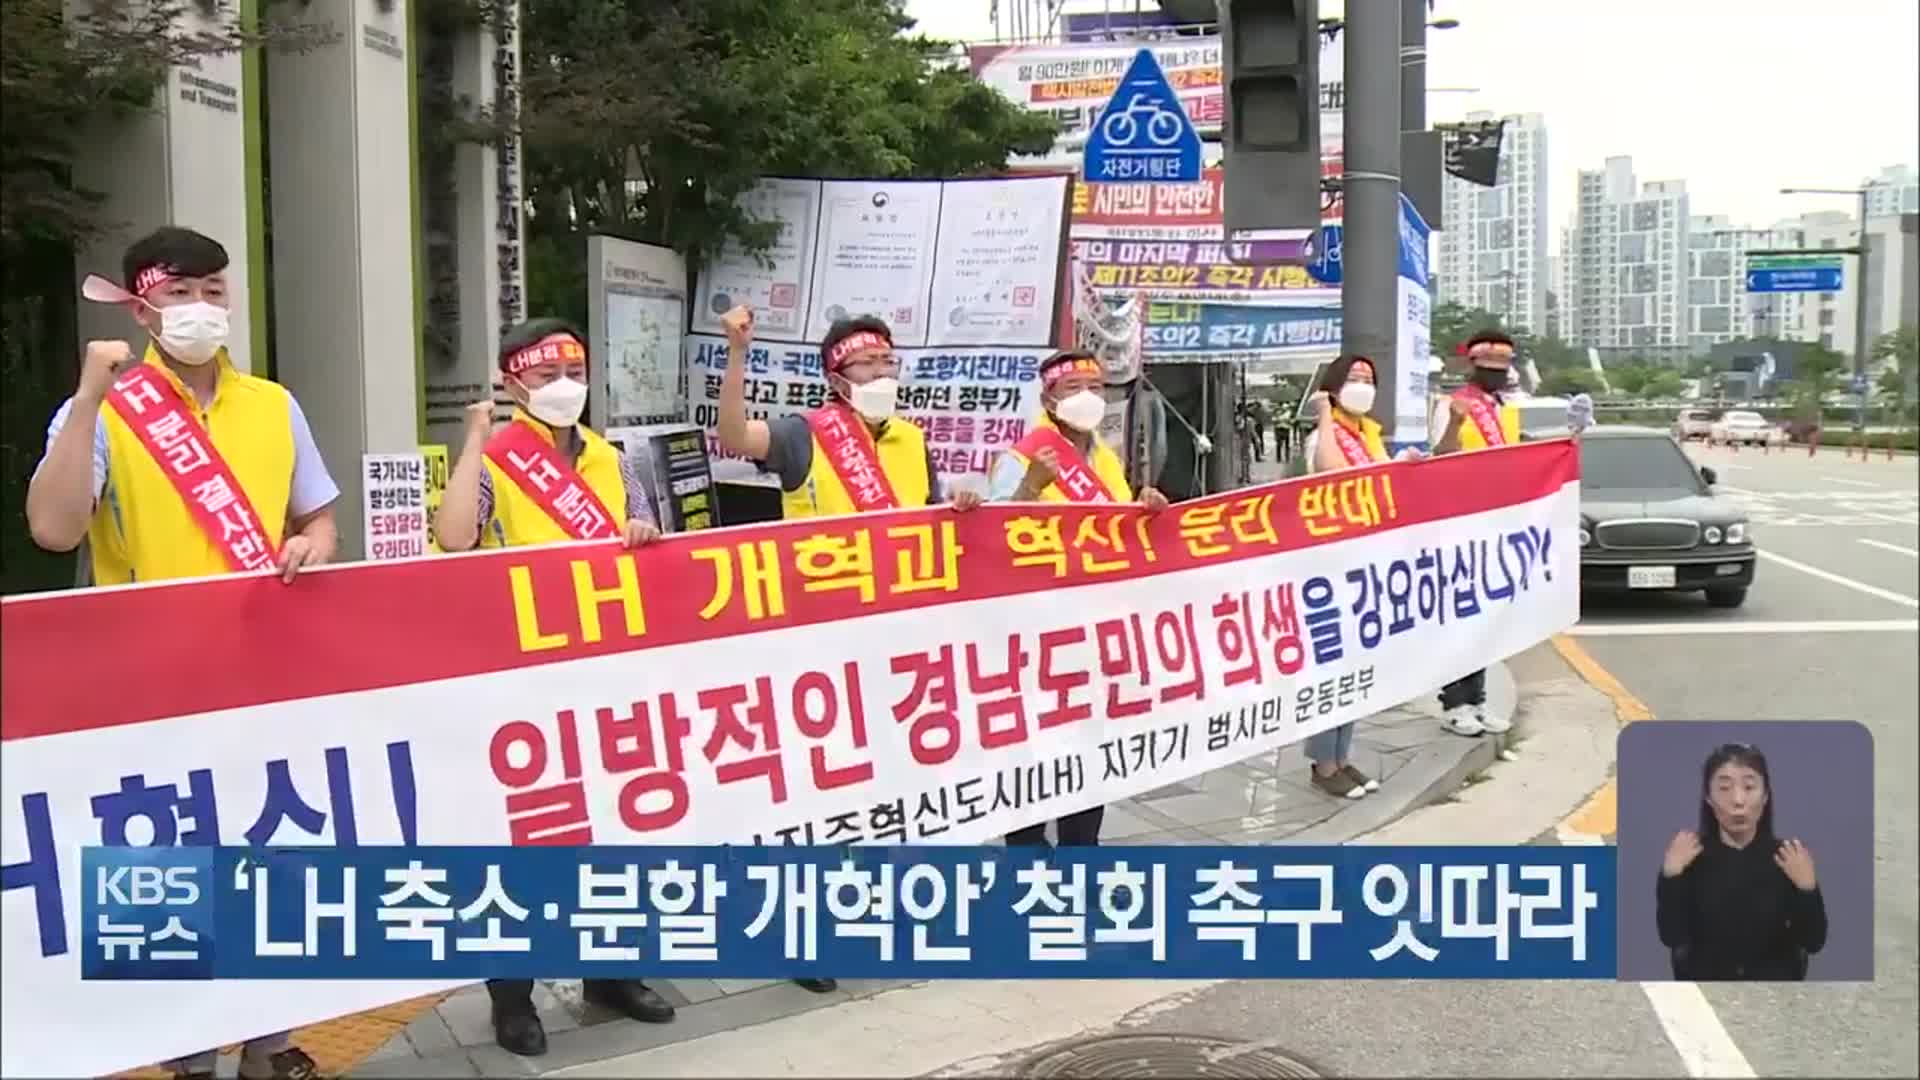 ‘LH 축소·분할 개혁안’ 철회 촉구 잇따라